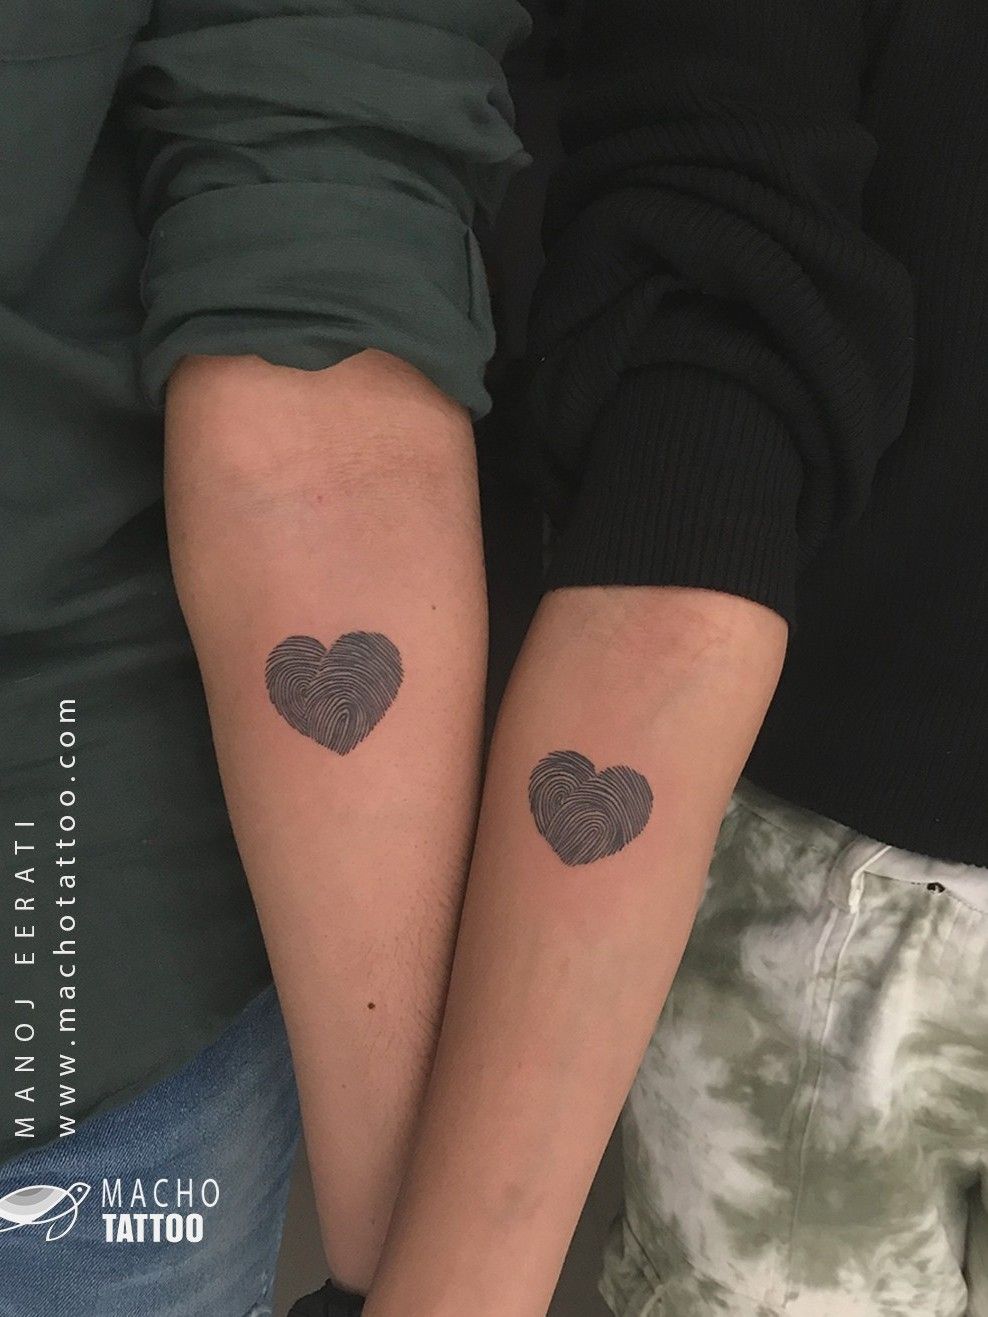 Share 74 fingerprint tattoos for couples super hot  thtantai2